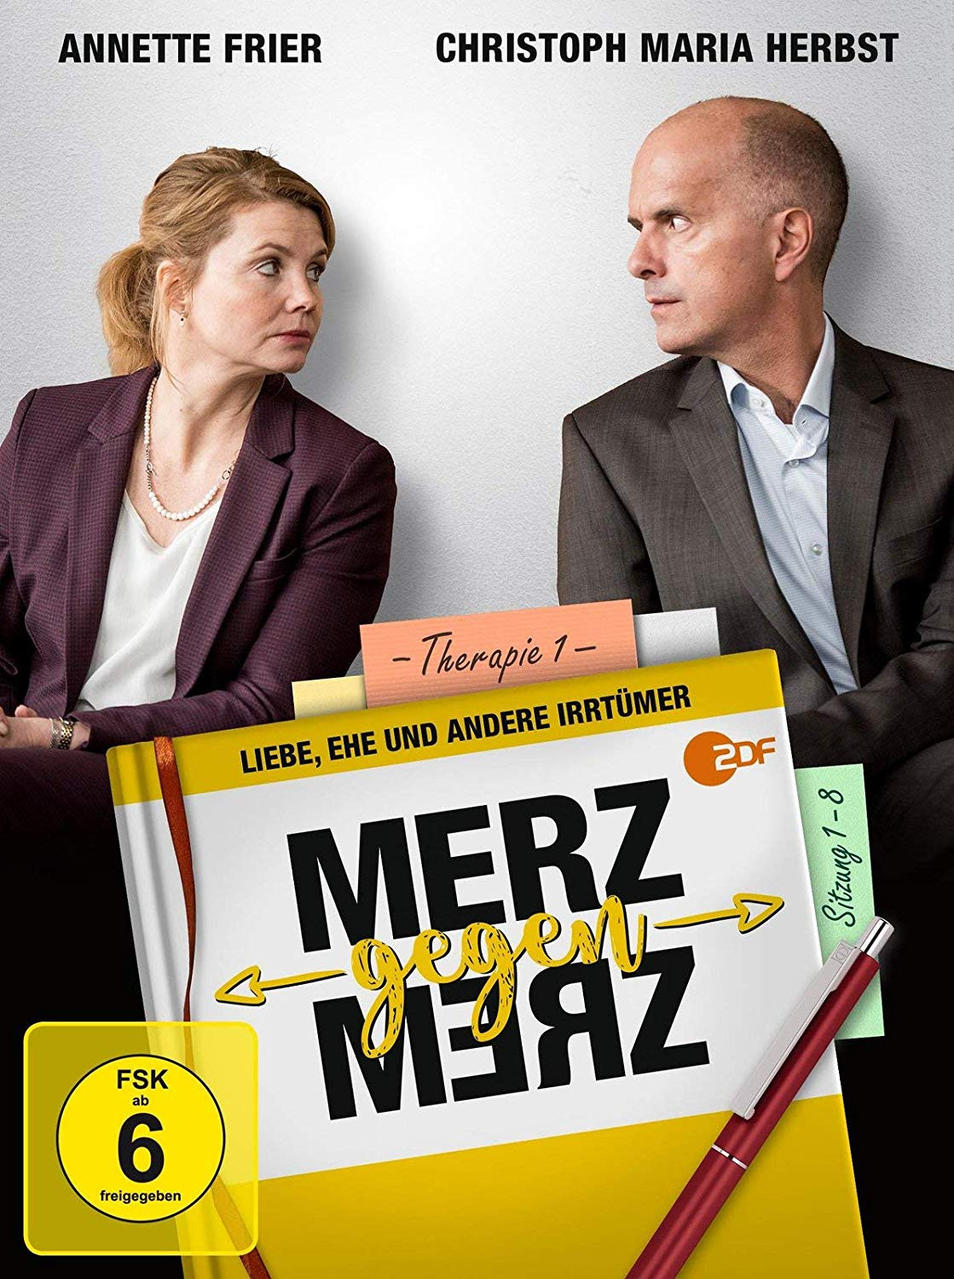 1 Staffel Merz Merz - DVD gegen